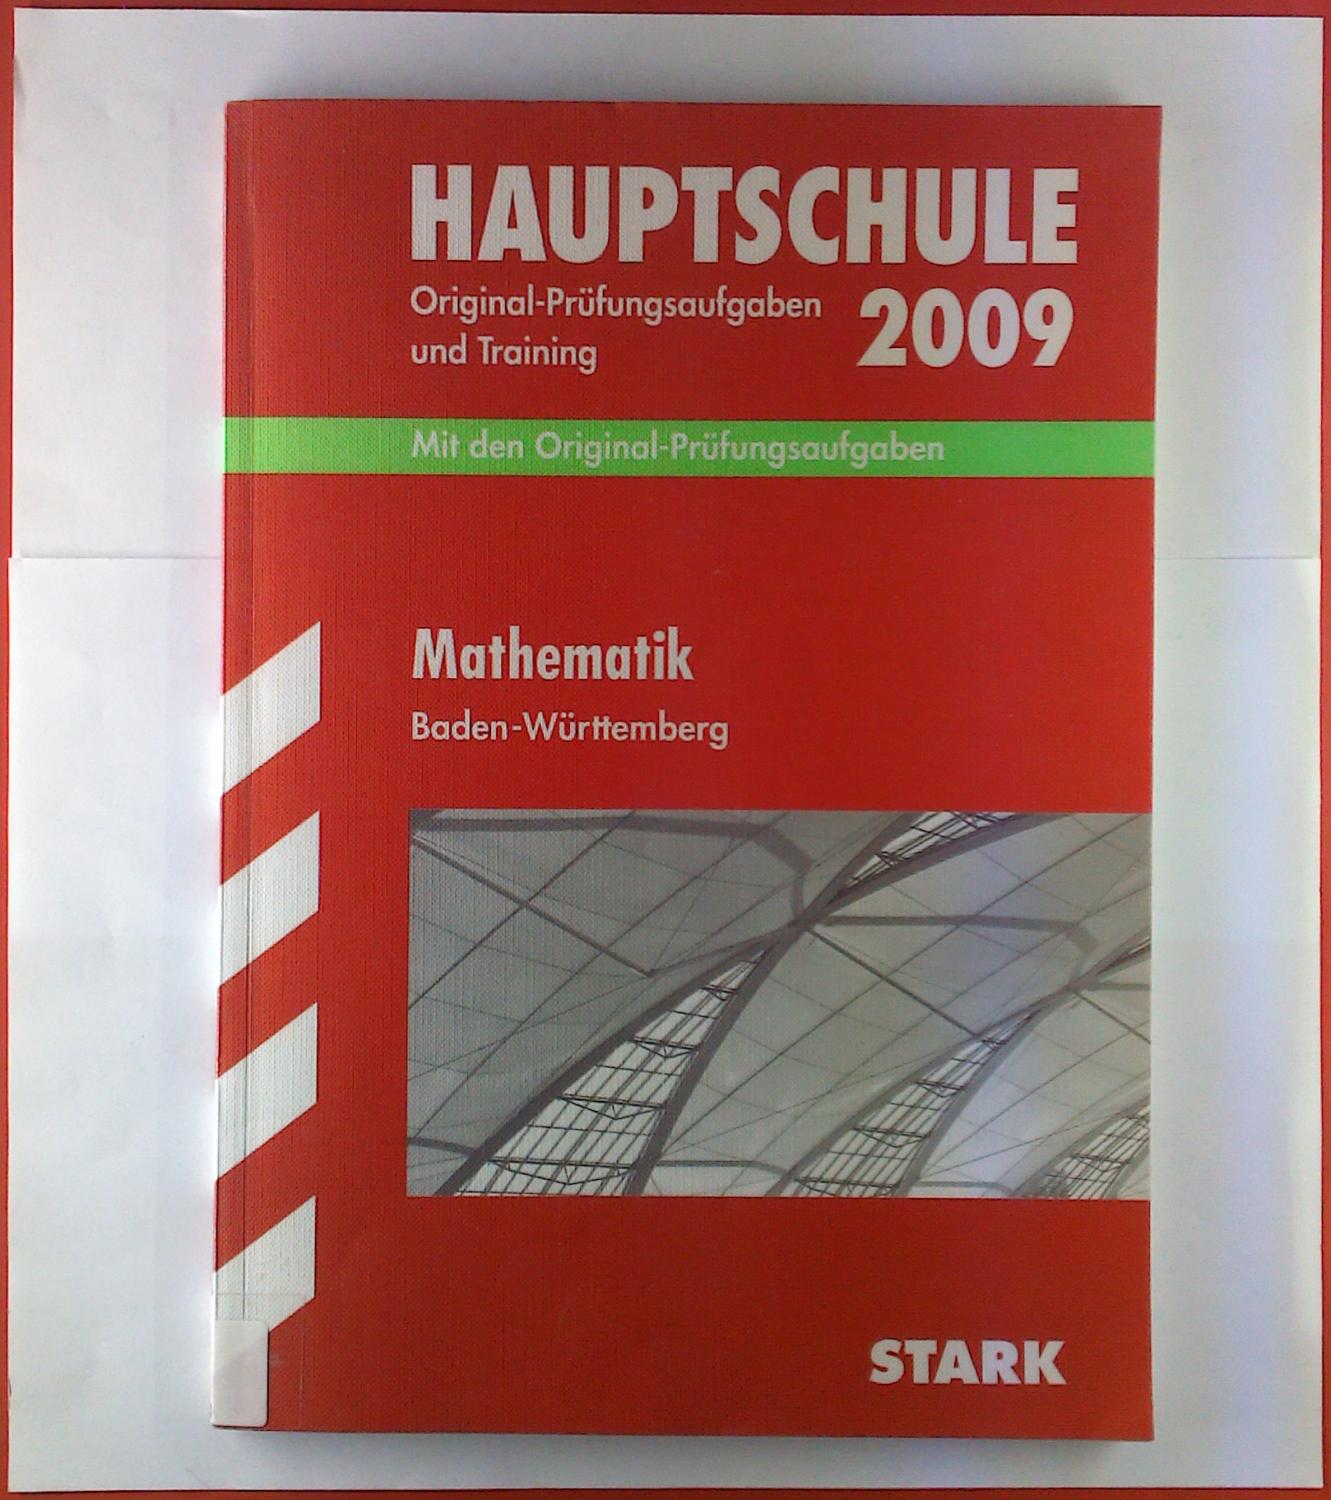 Hauptschule Original-Prüfungsaufgaben und training 2009. Mit den Original-Prüfungsaufgaben. Mathematik Baden-Württemberg - Walter Schmid